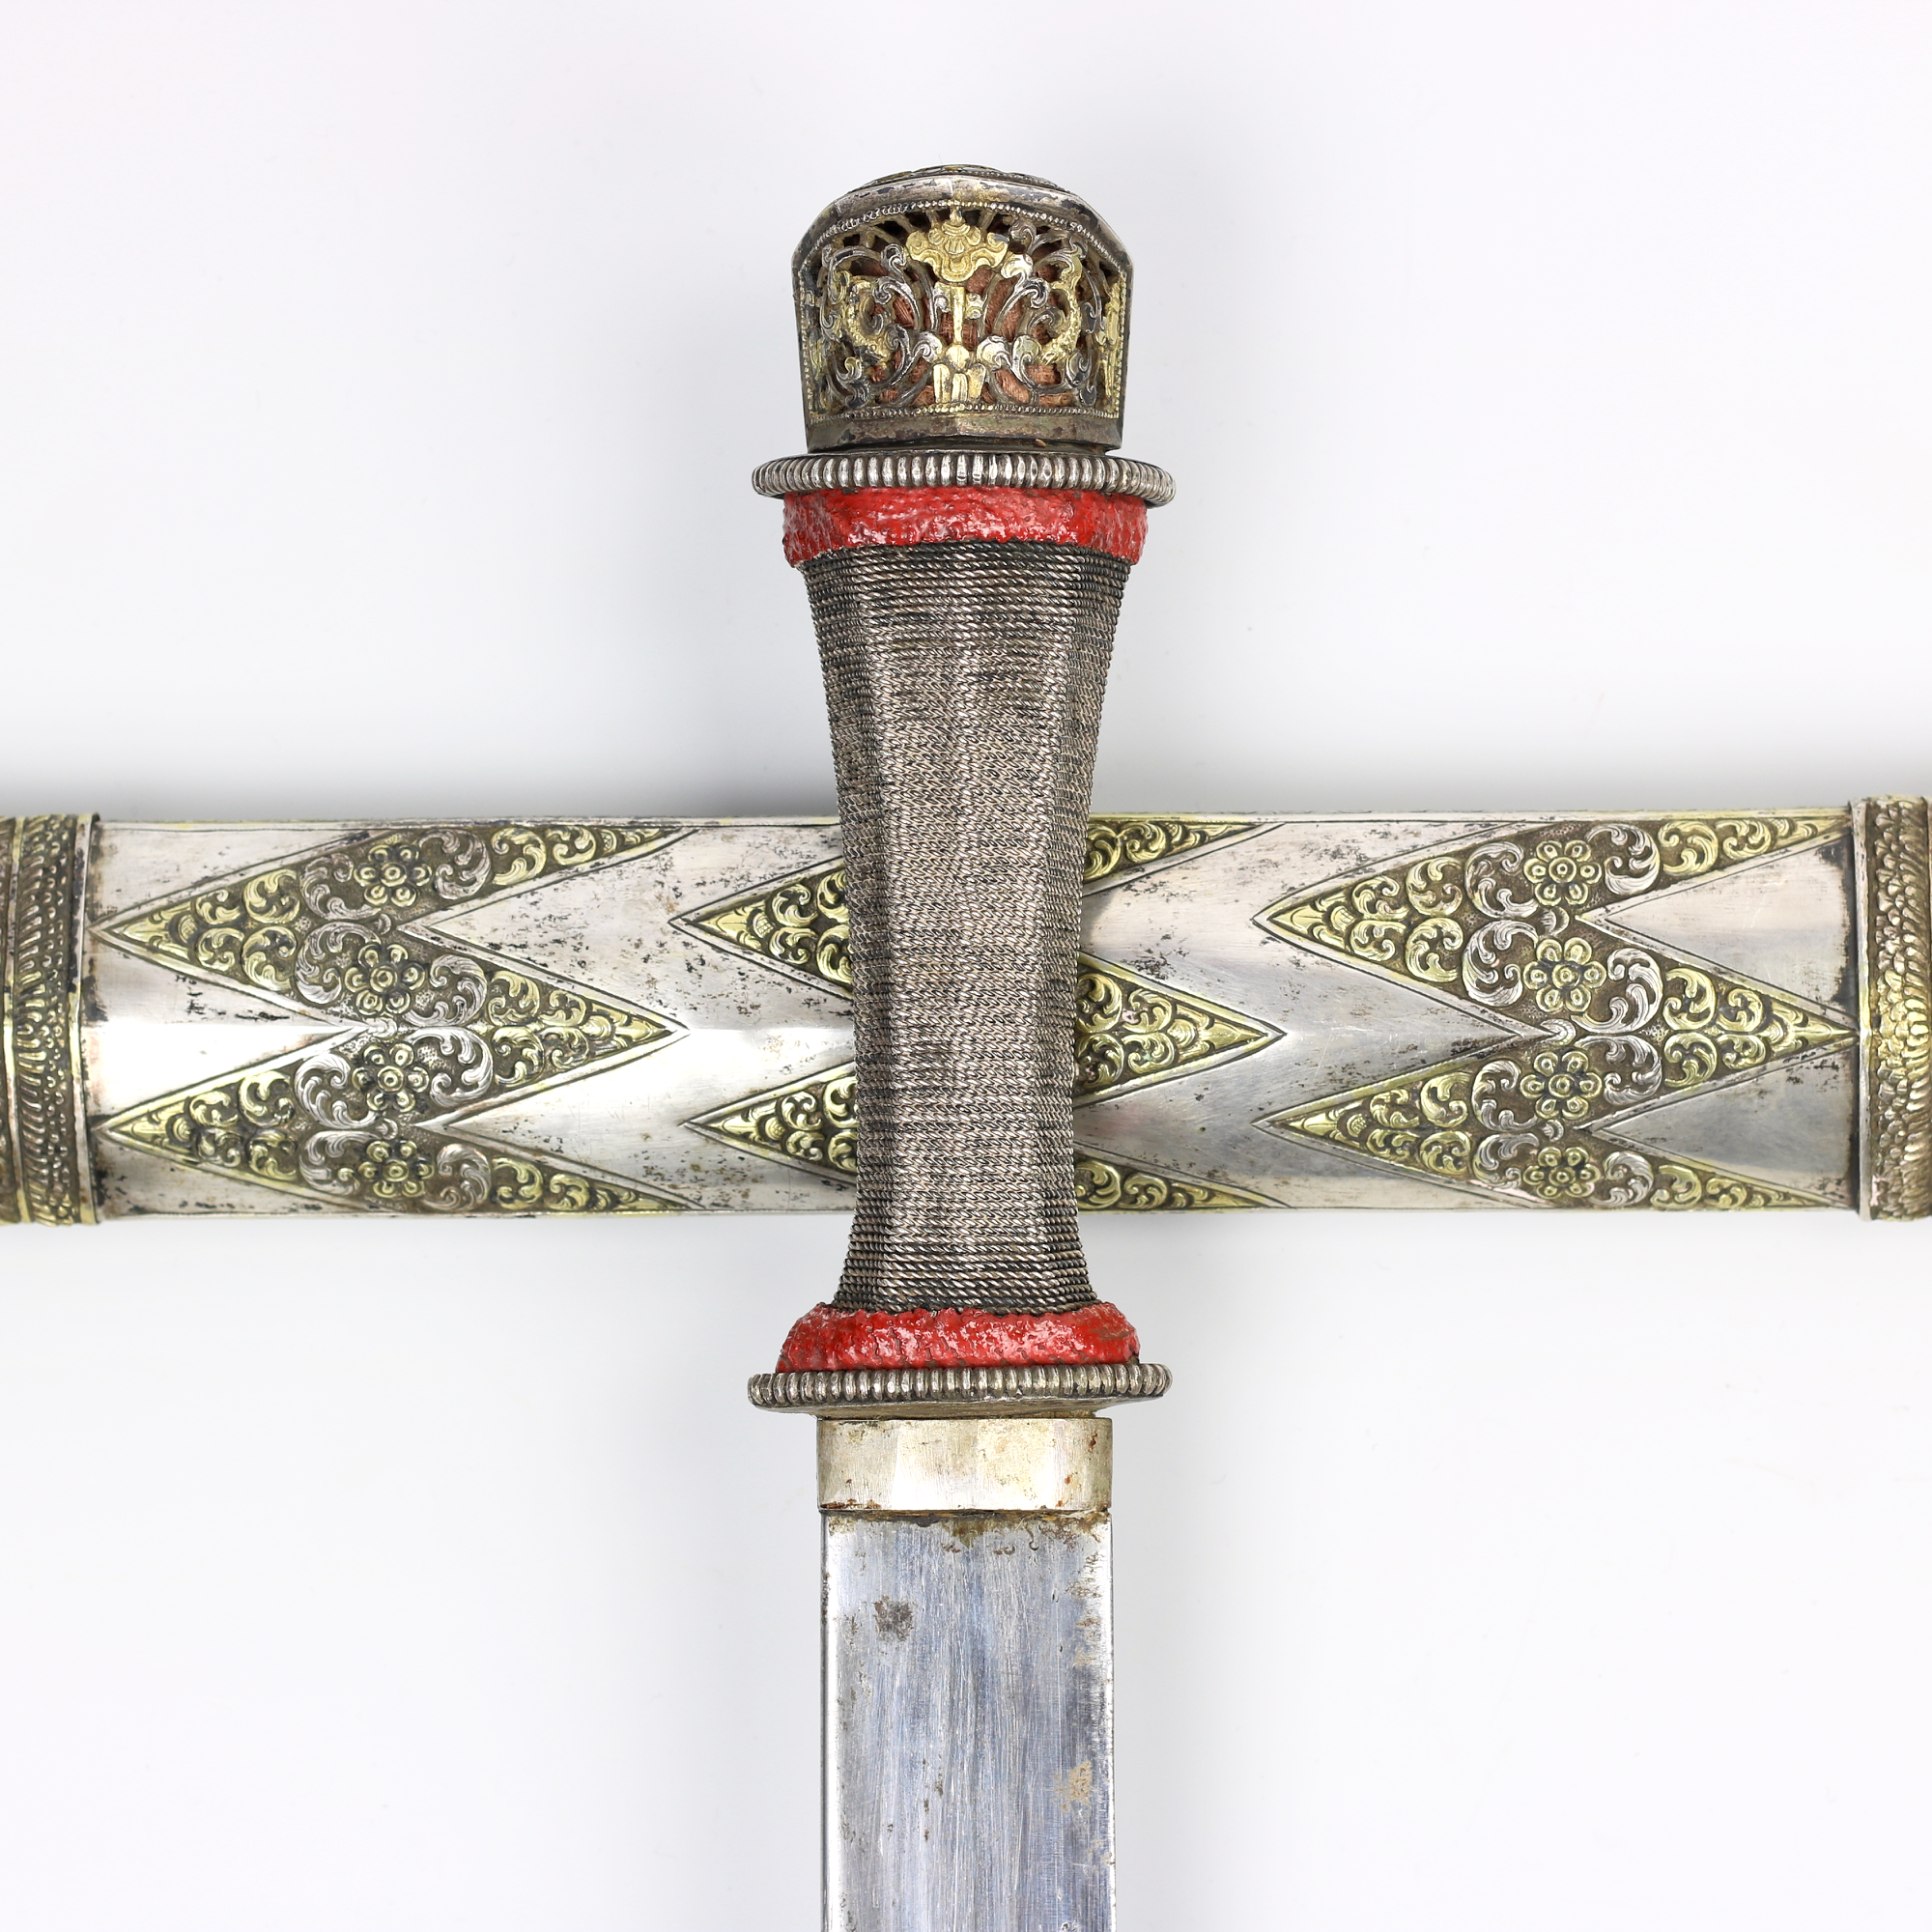 A notable Bhutanese sword